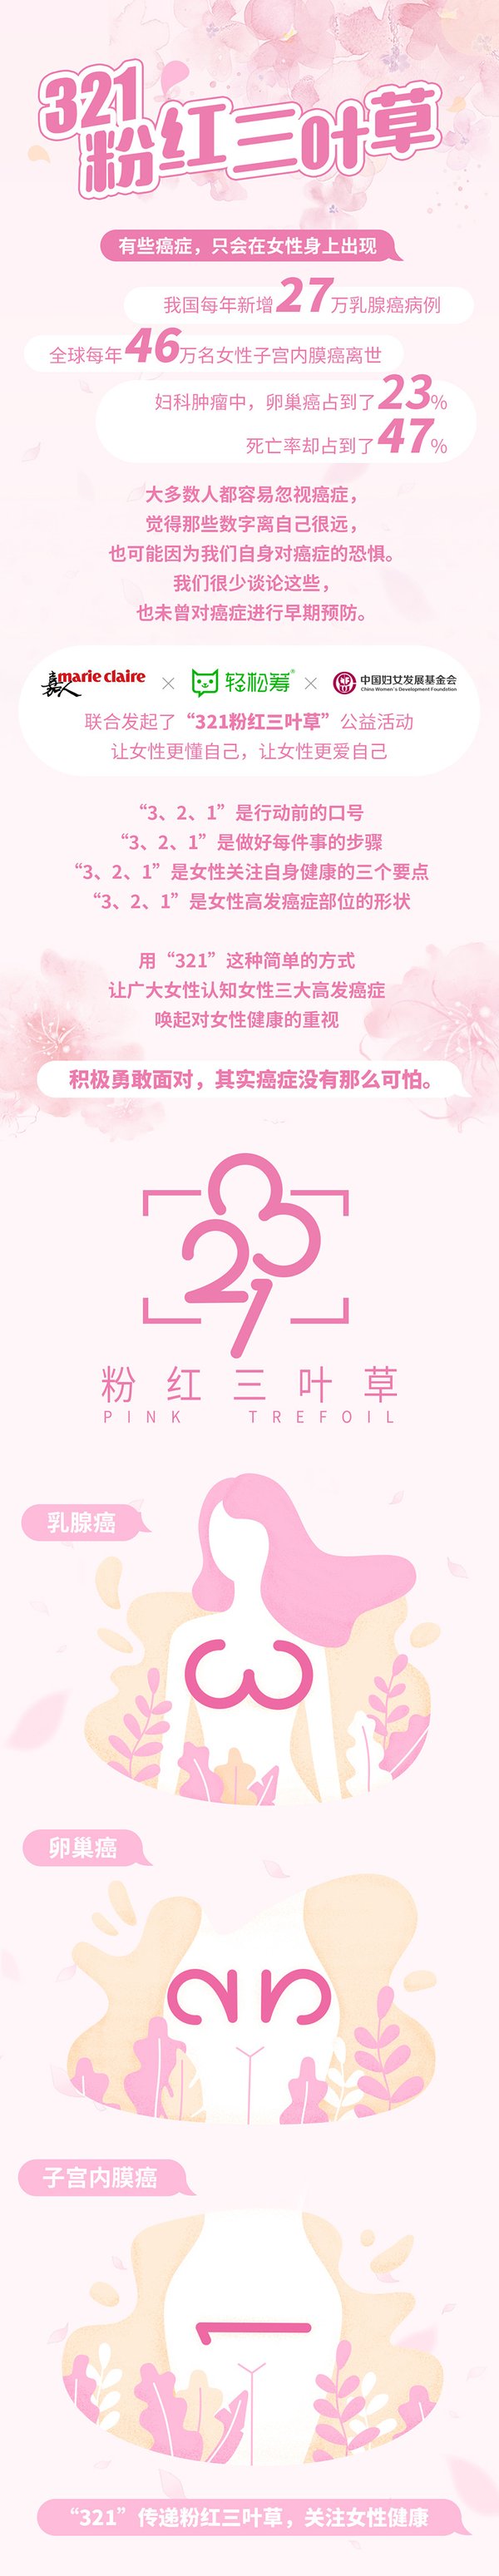 至本医疗科技跨界“321粉红三叶草”公益活动，关注6.8亿女性健康